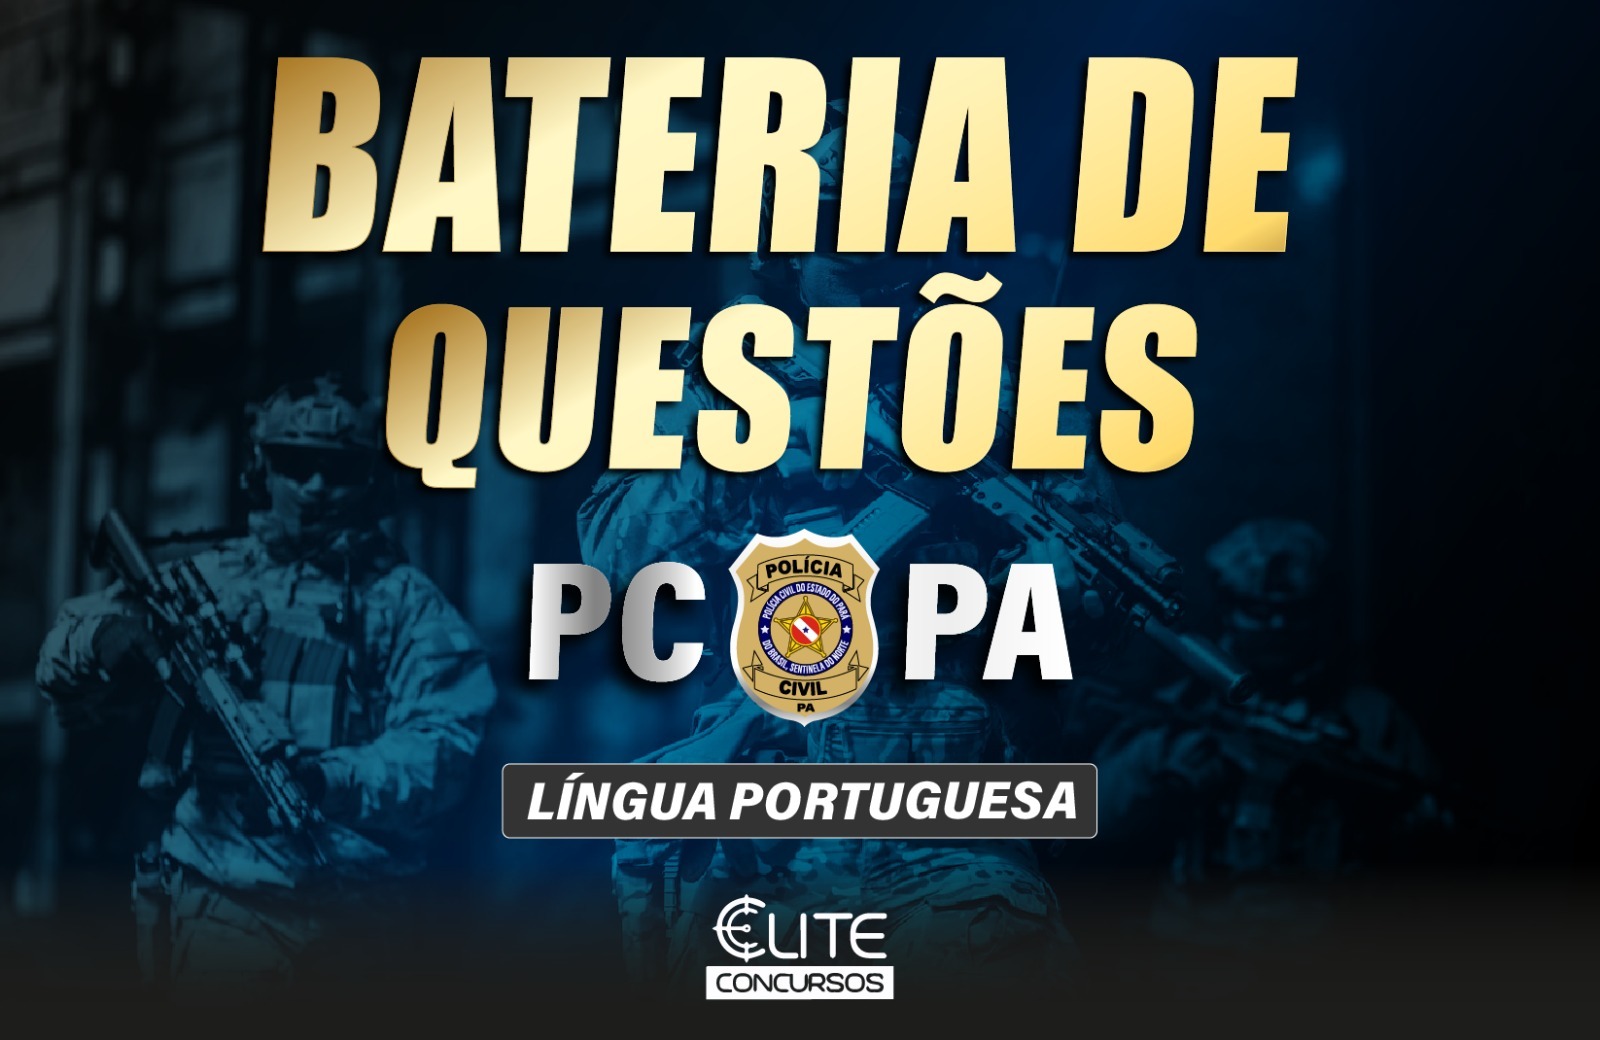 BATERIA DE QUESTÕES PC/PA - L. PORTUGUESA